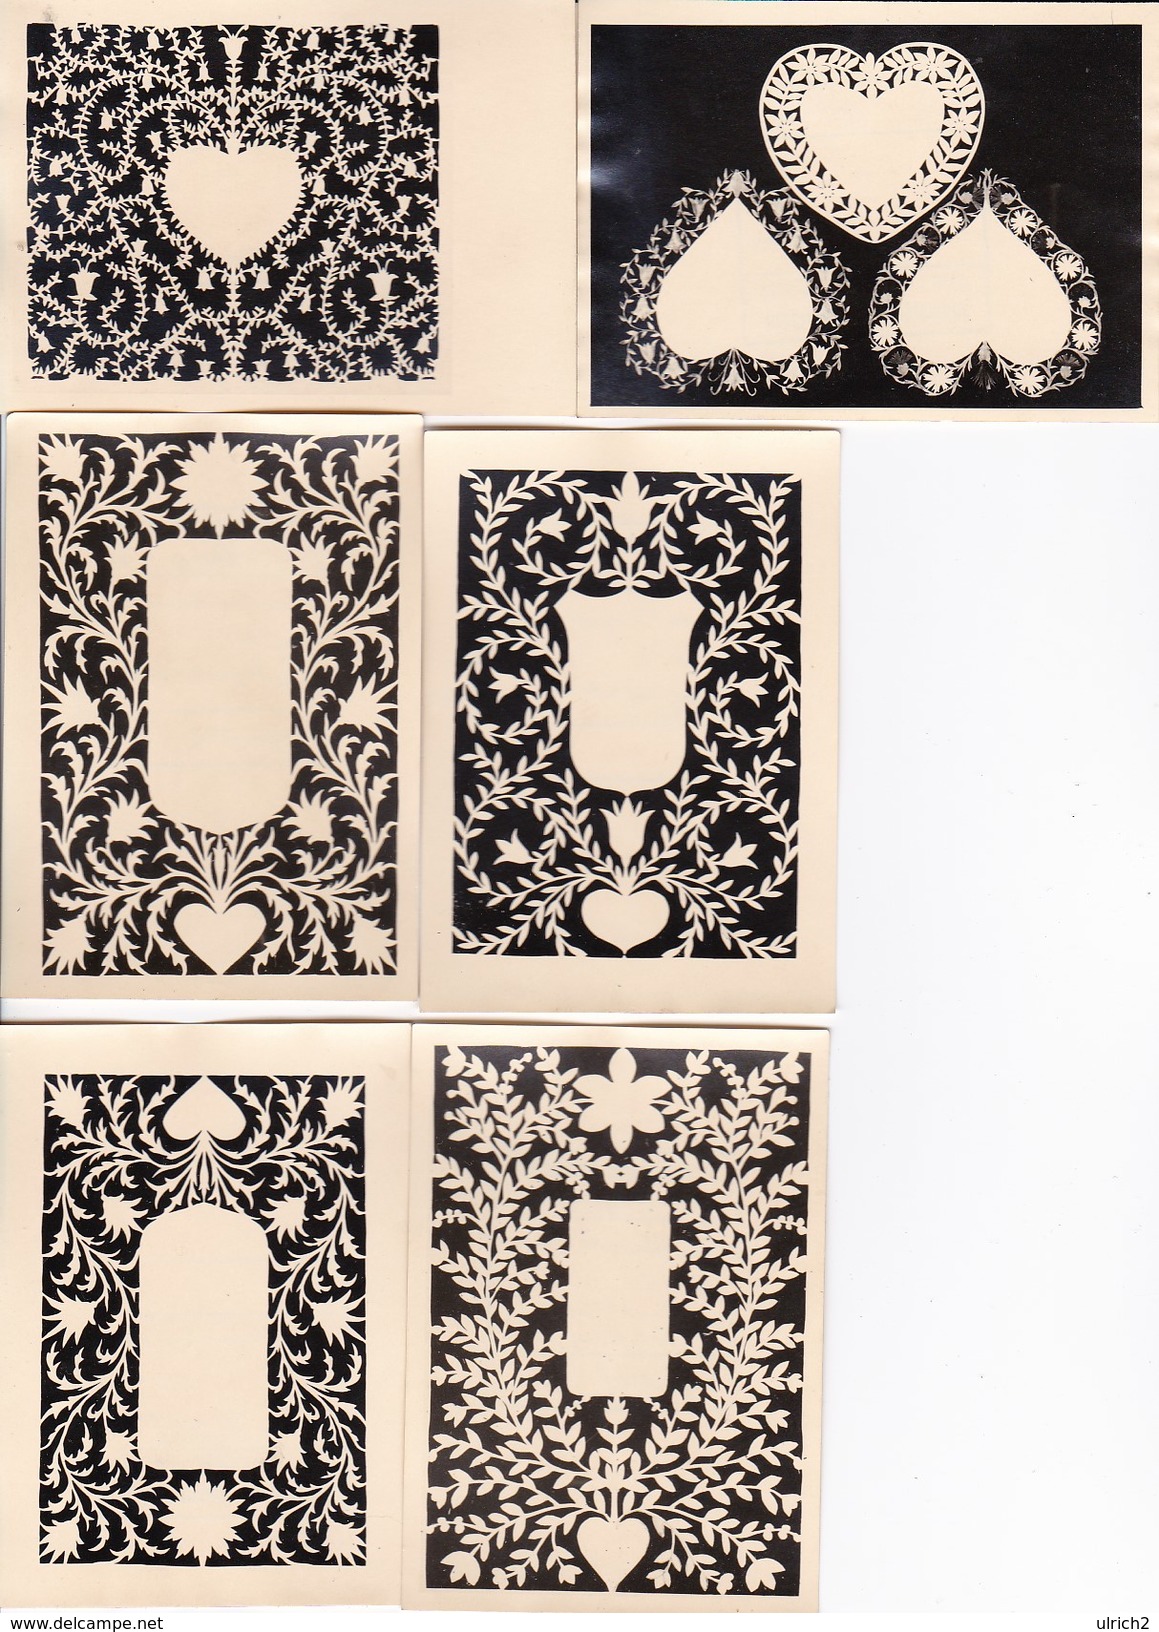 6 Fotos Von Scherenschnittmustern - 7*10cm - 1948 (32405) - Scherenschnitt - Silhouette